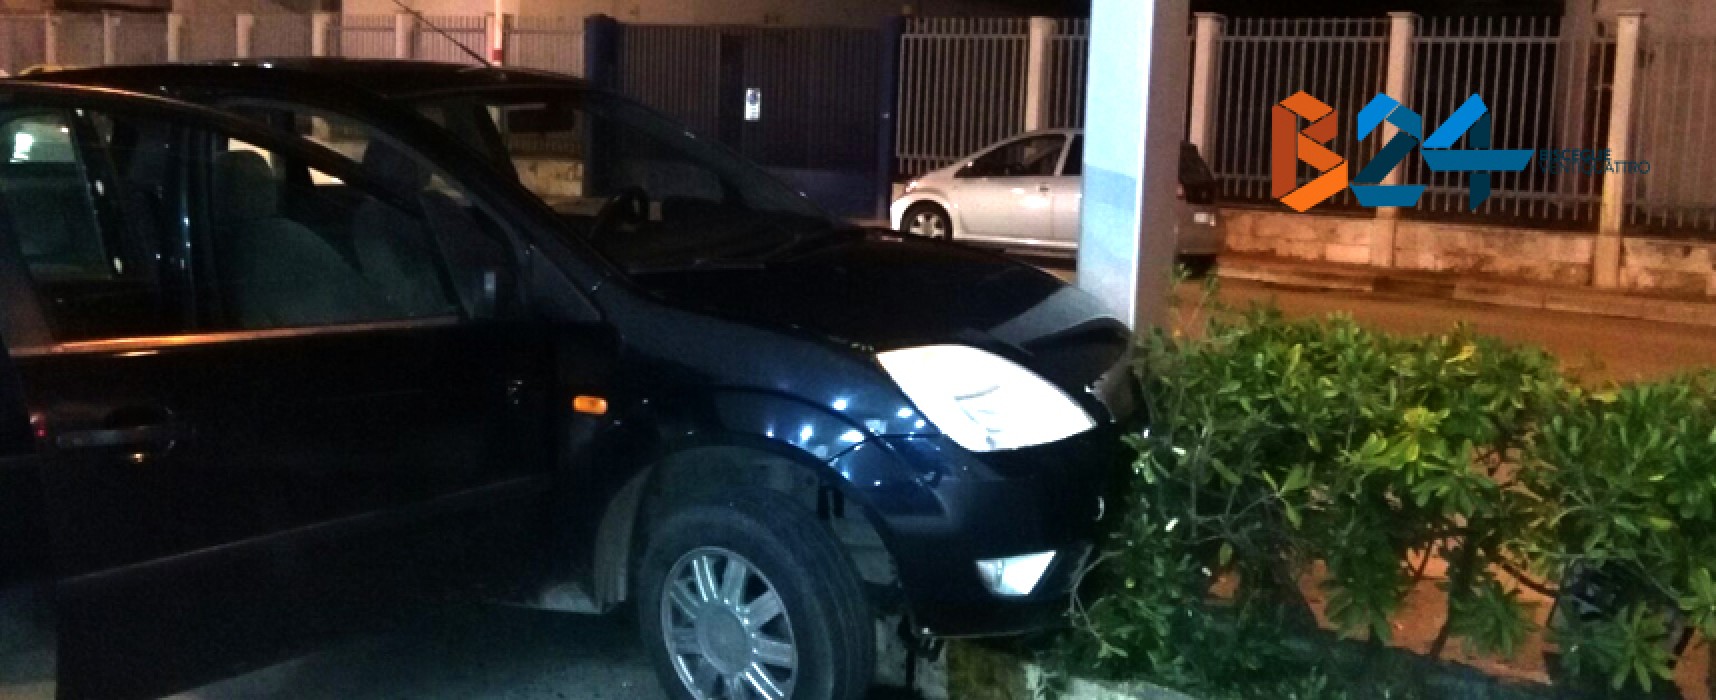 Incidente in via Giovanni Bovio, auto finisce su siepe / FOTO